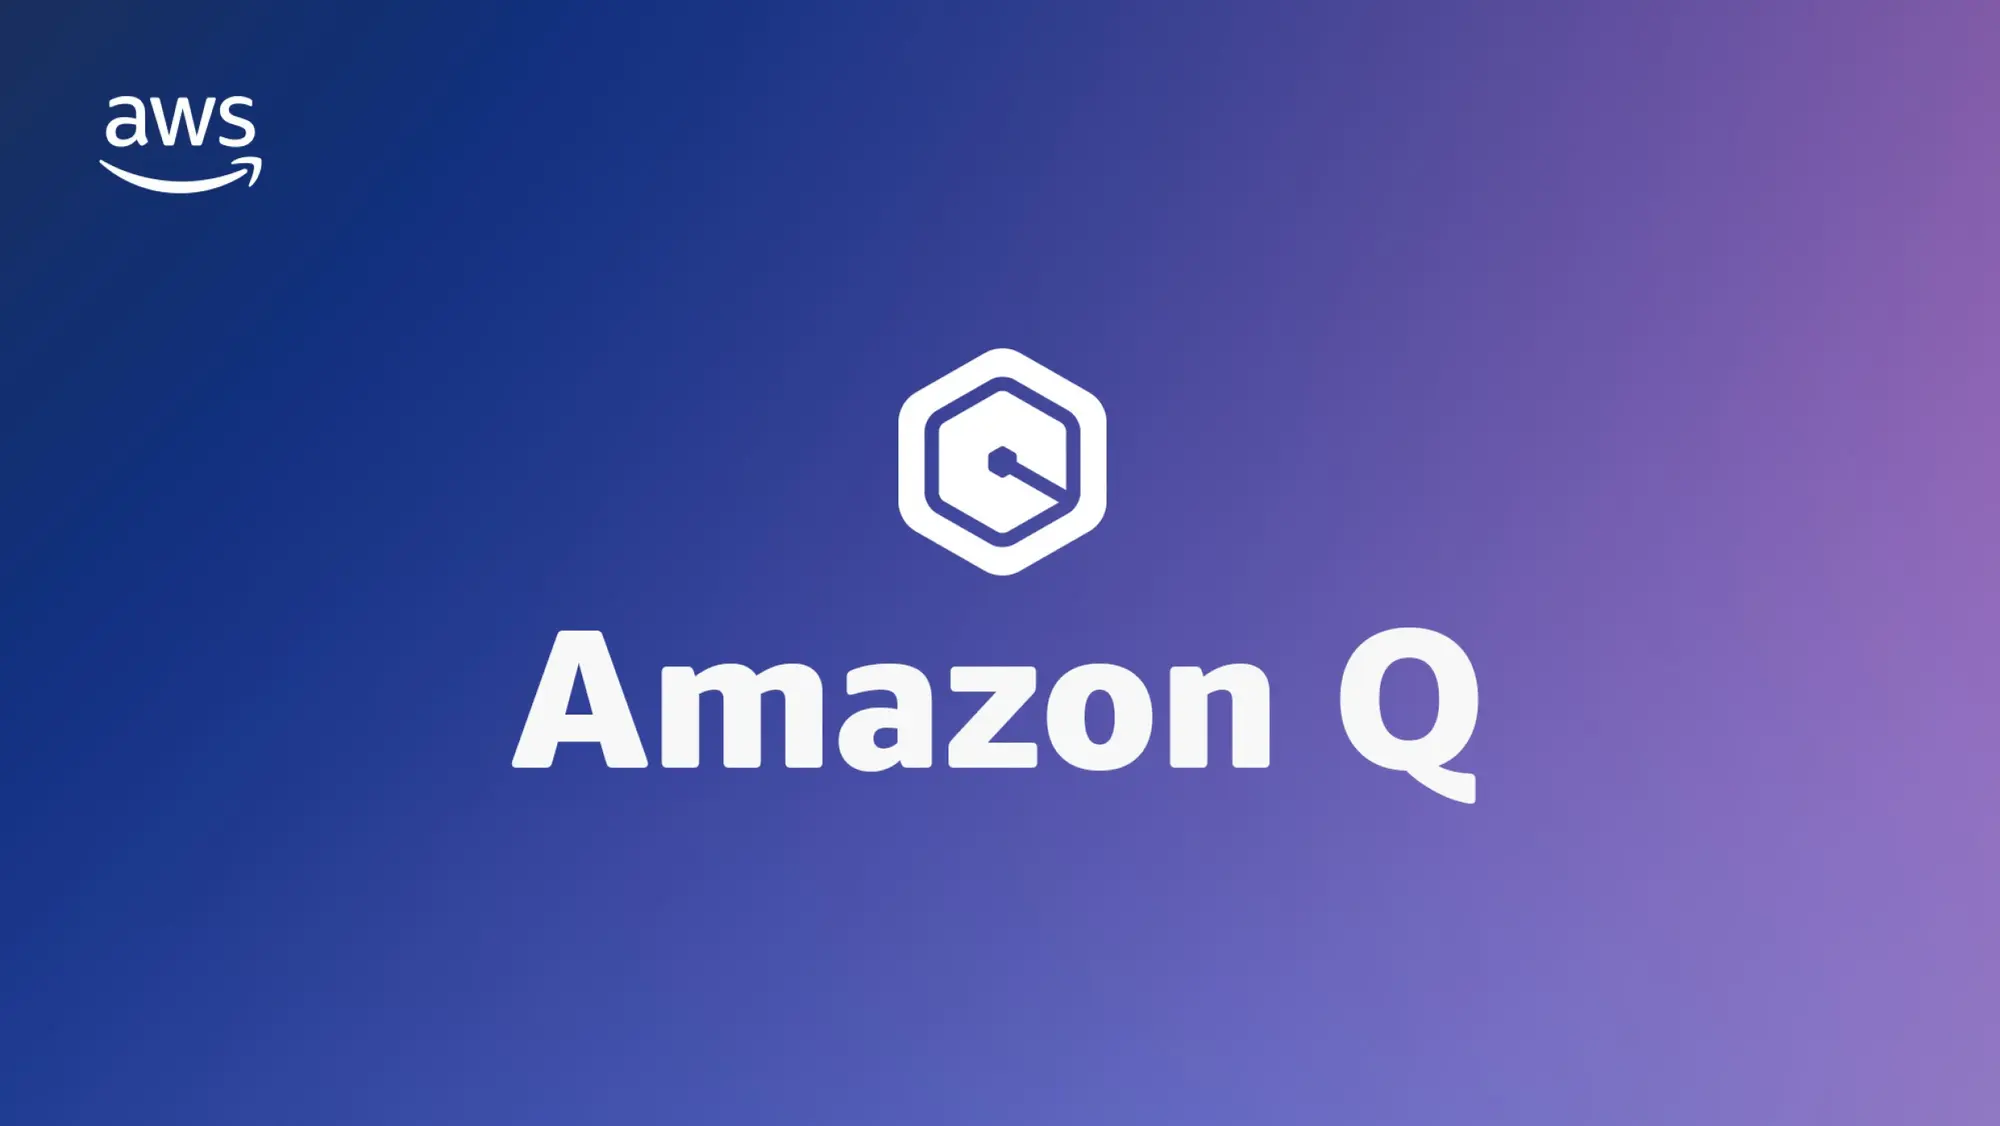 亚马逊推出了 Amazon Q AI 助手